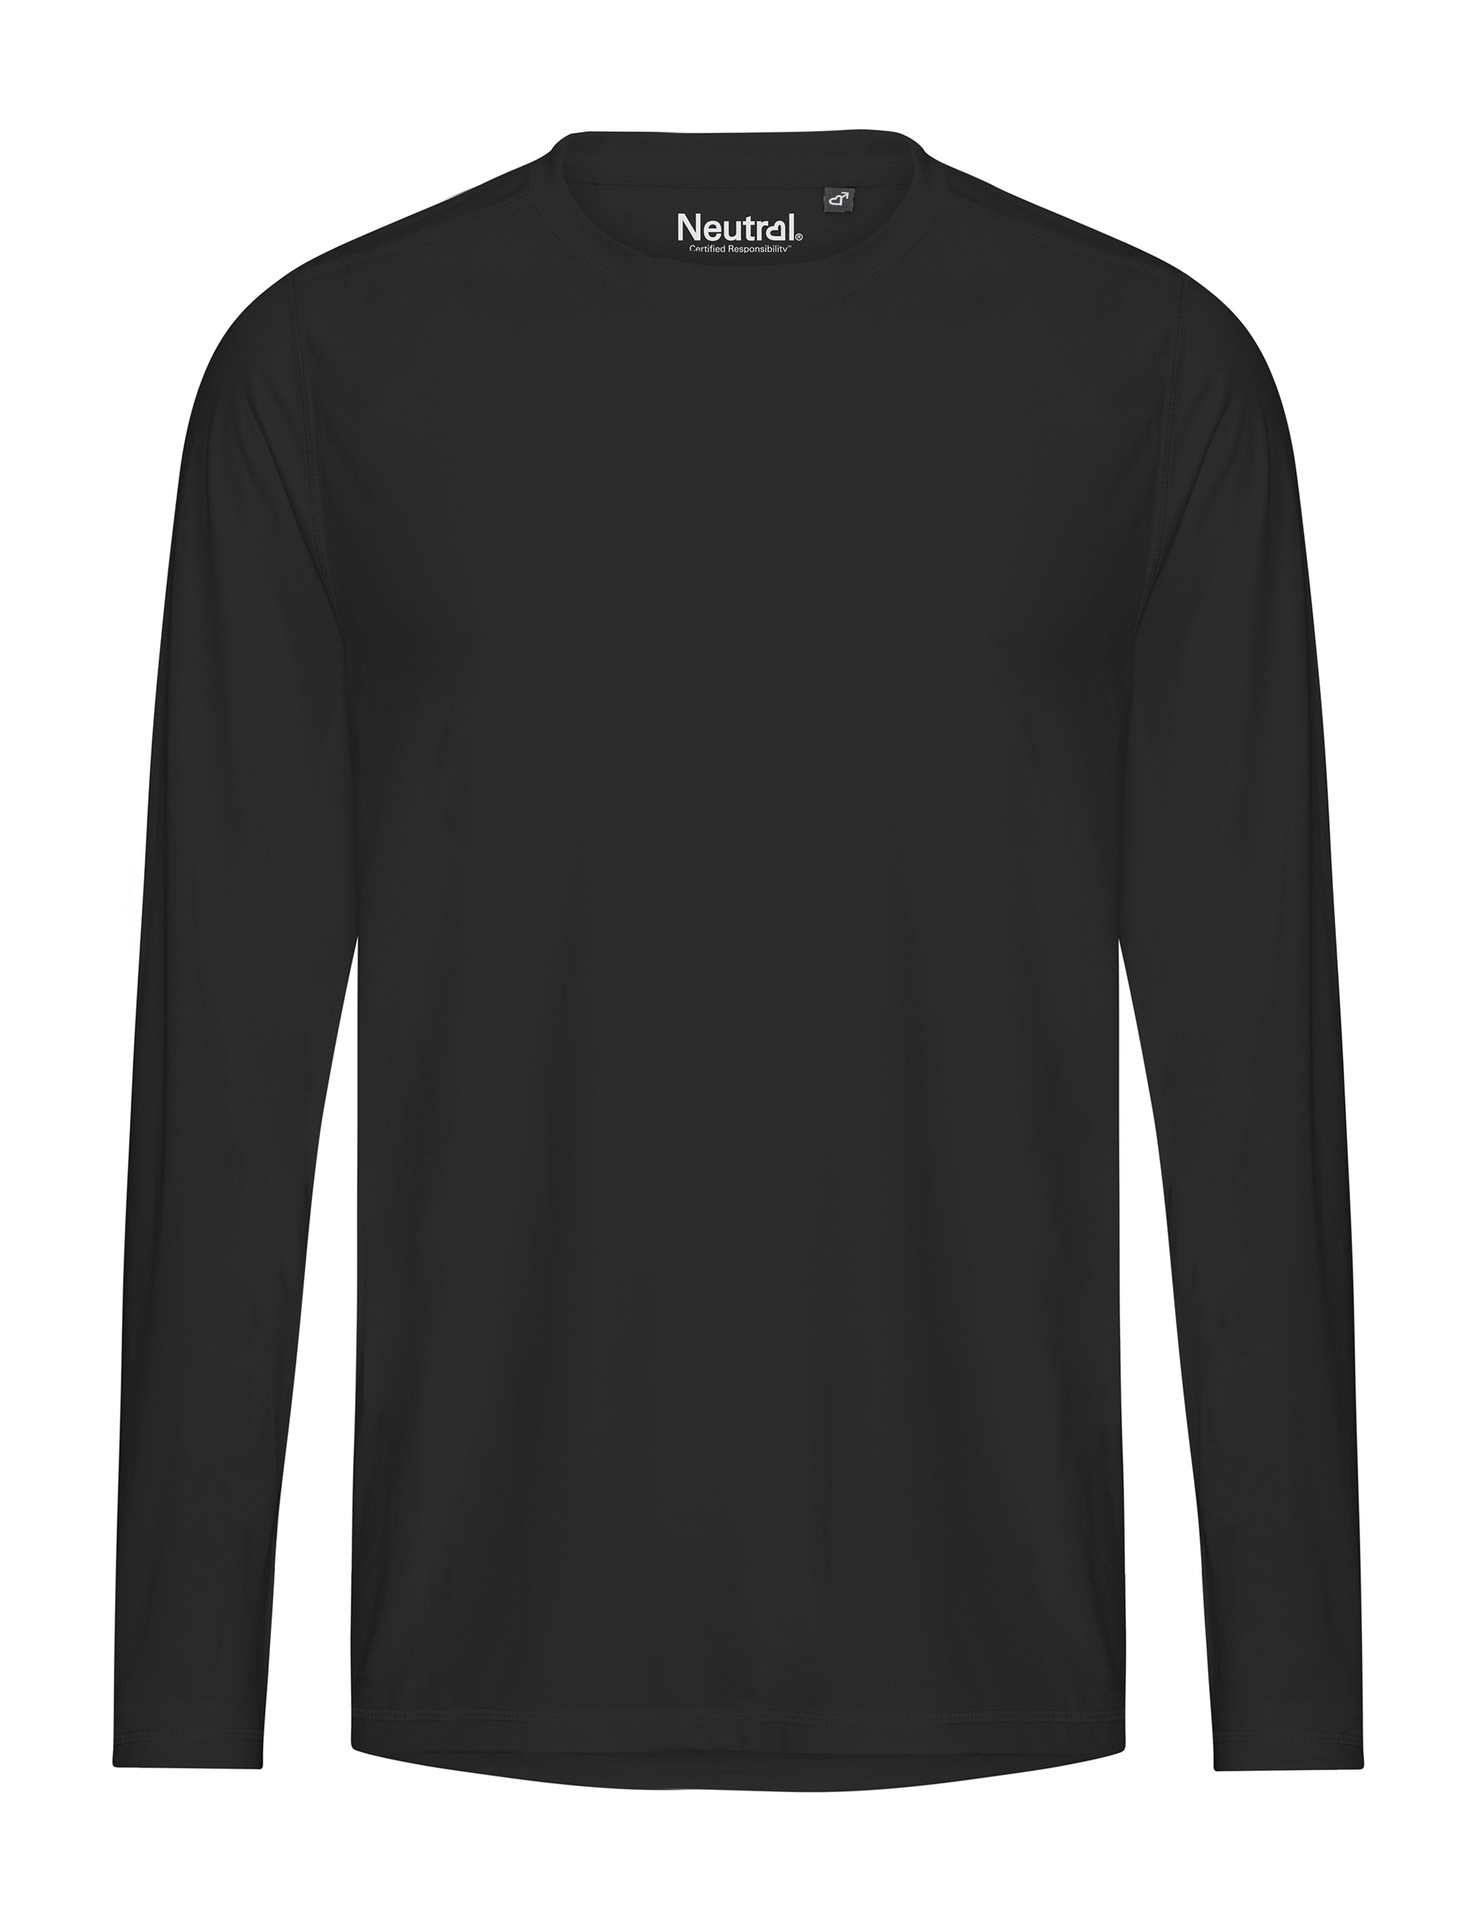 [PR/03830] Recycled Performance LS T-Shirt (Black 03, 2XL)